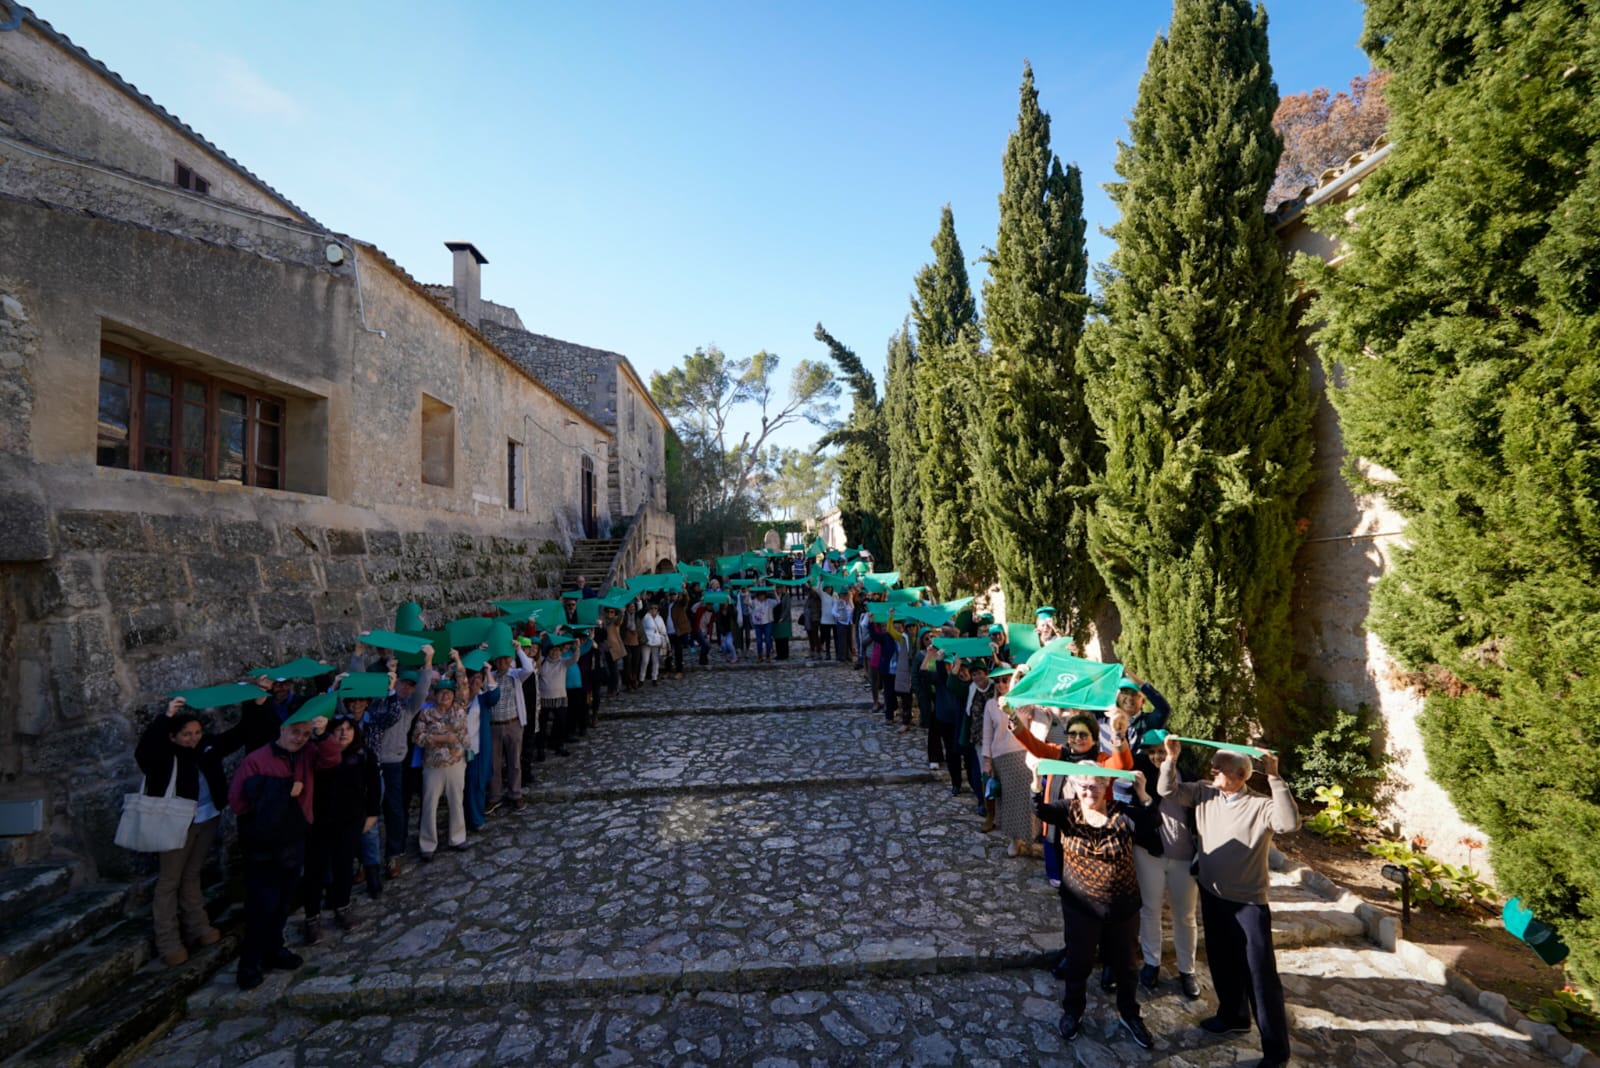 Quinze pobles fan força contra el càncer a Sant Joan en la primera trobada comarcal